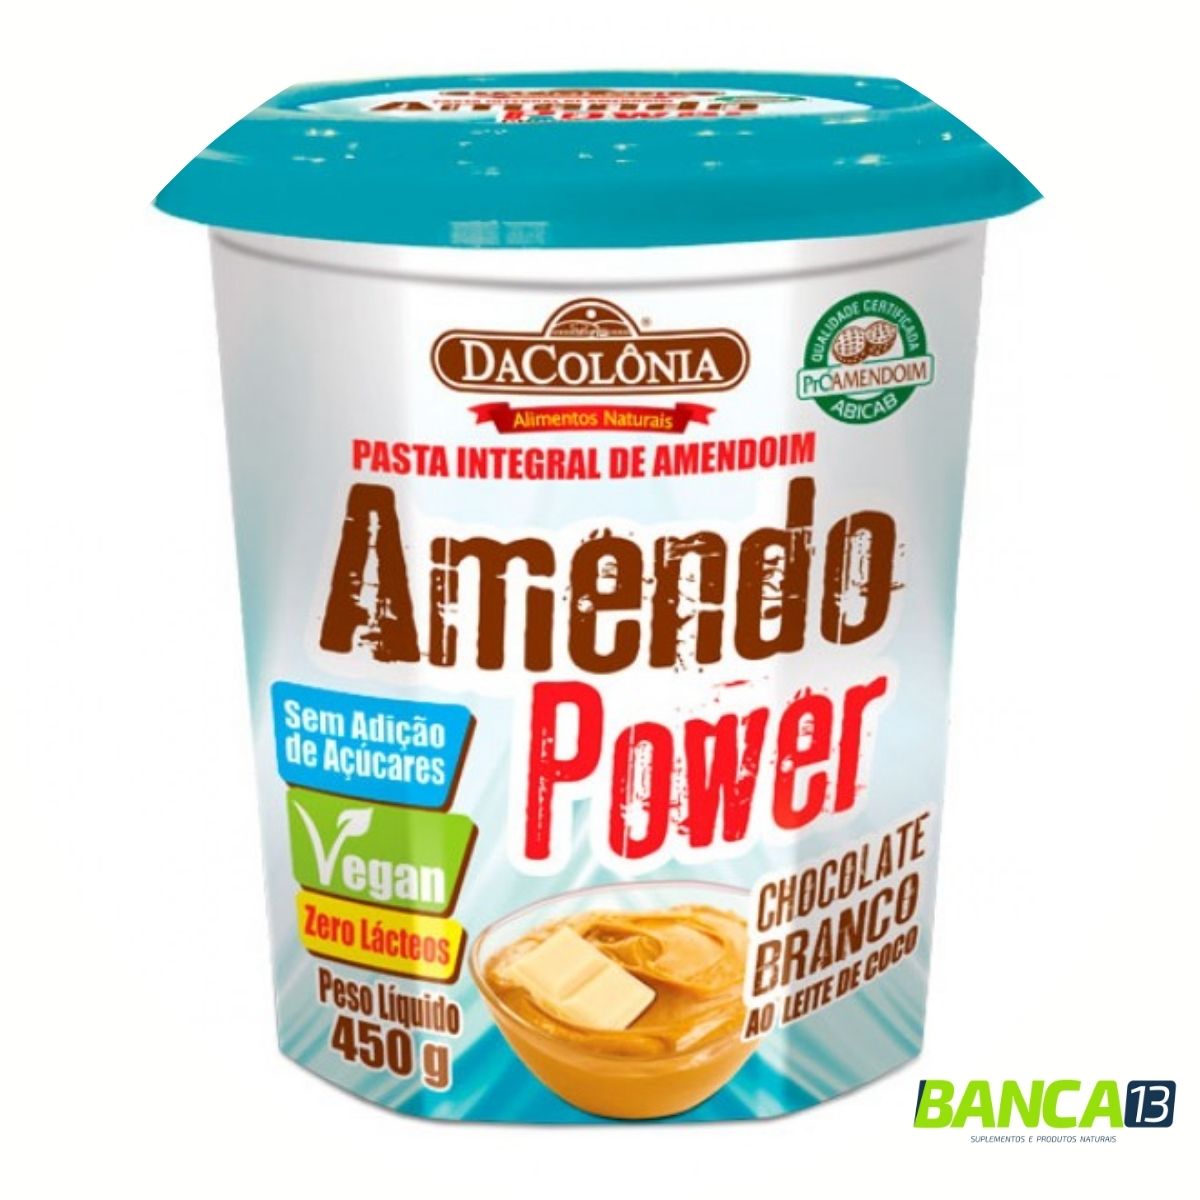 Pasta de Amendoim Amendo Power Chocolate Branco ao Leite de Coco 450G - DaColônia